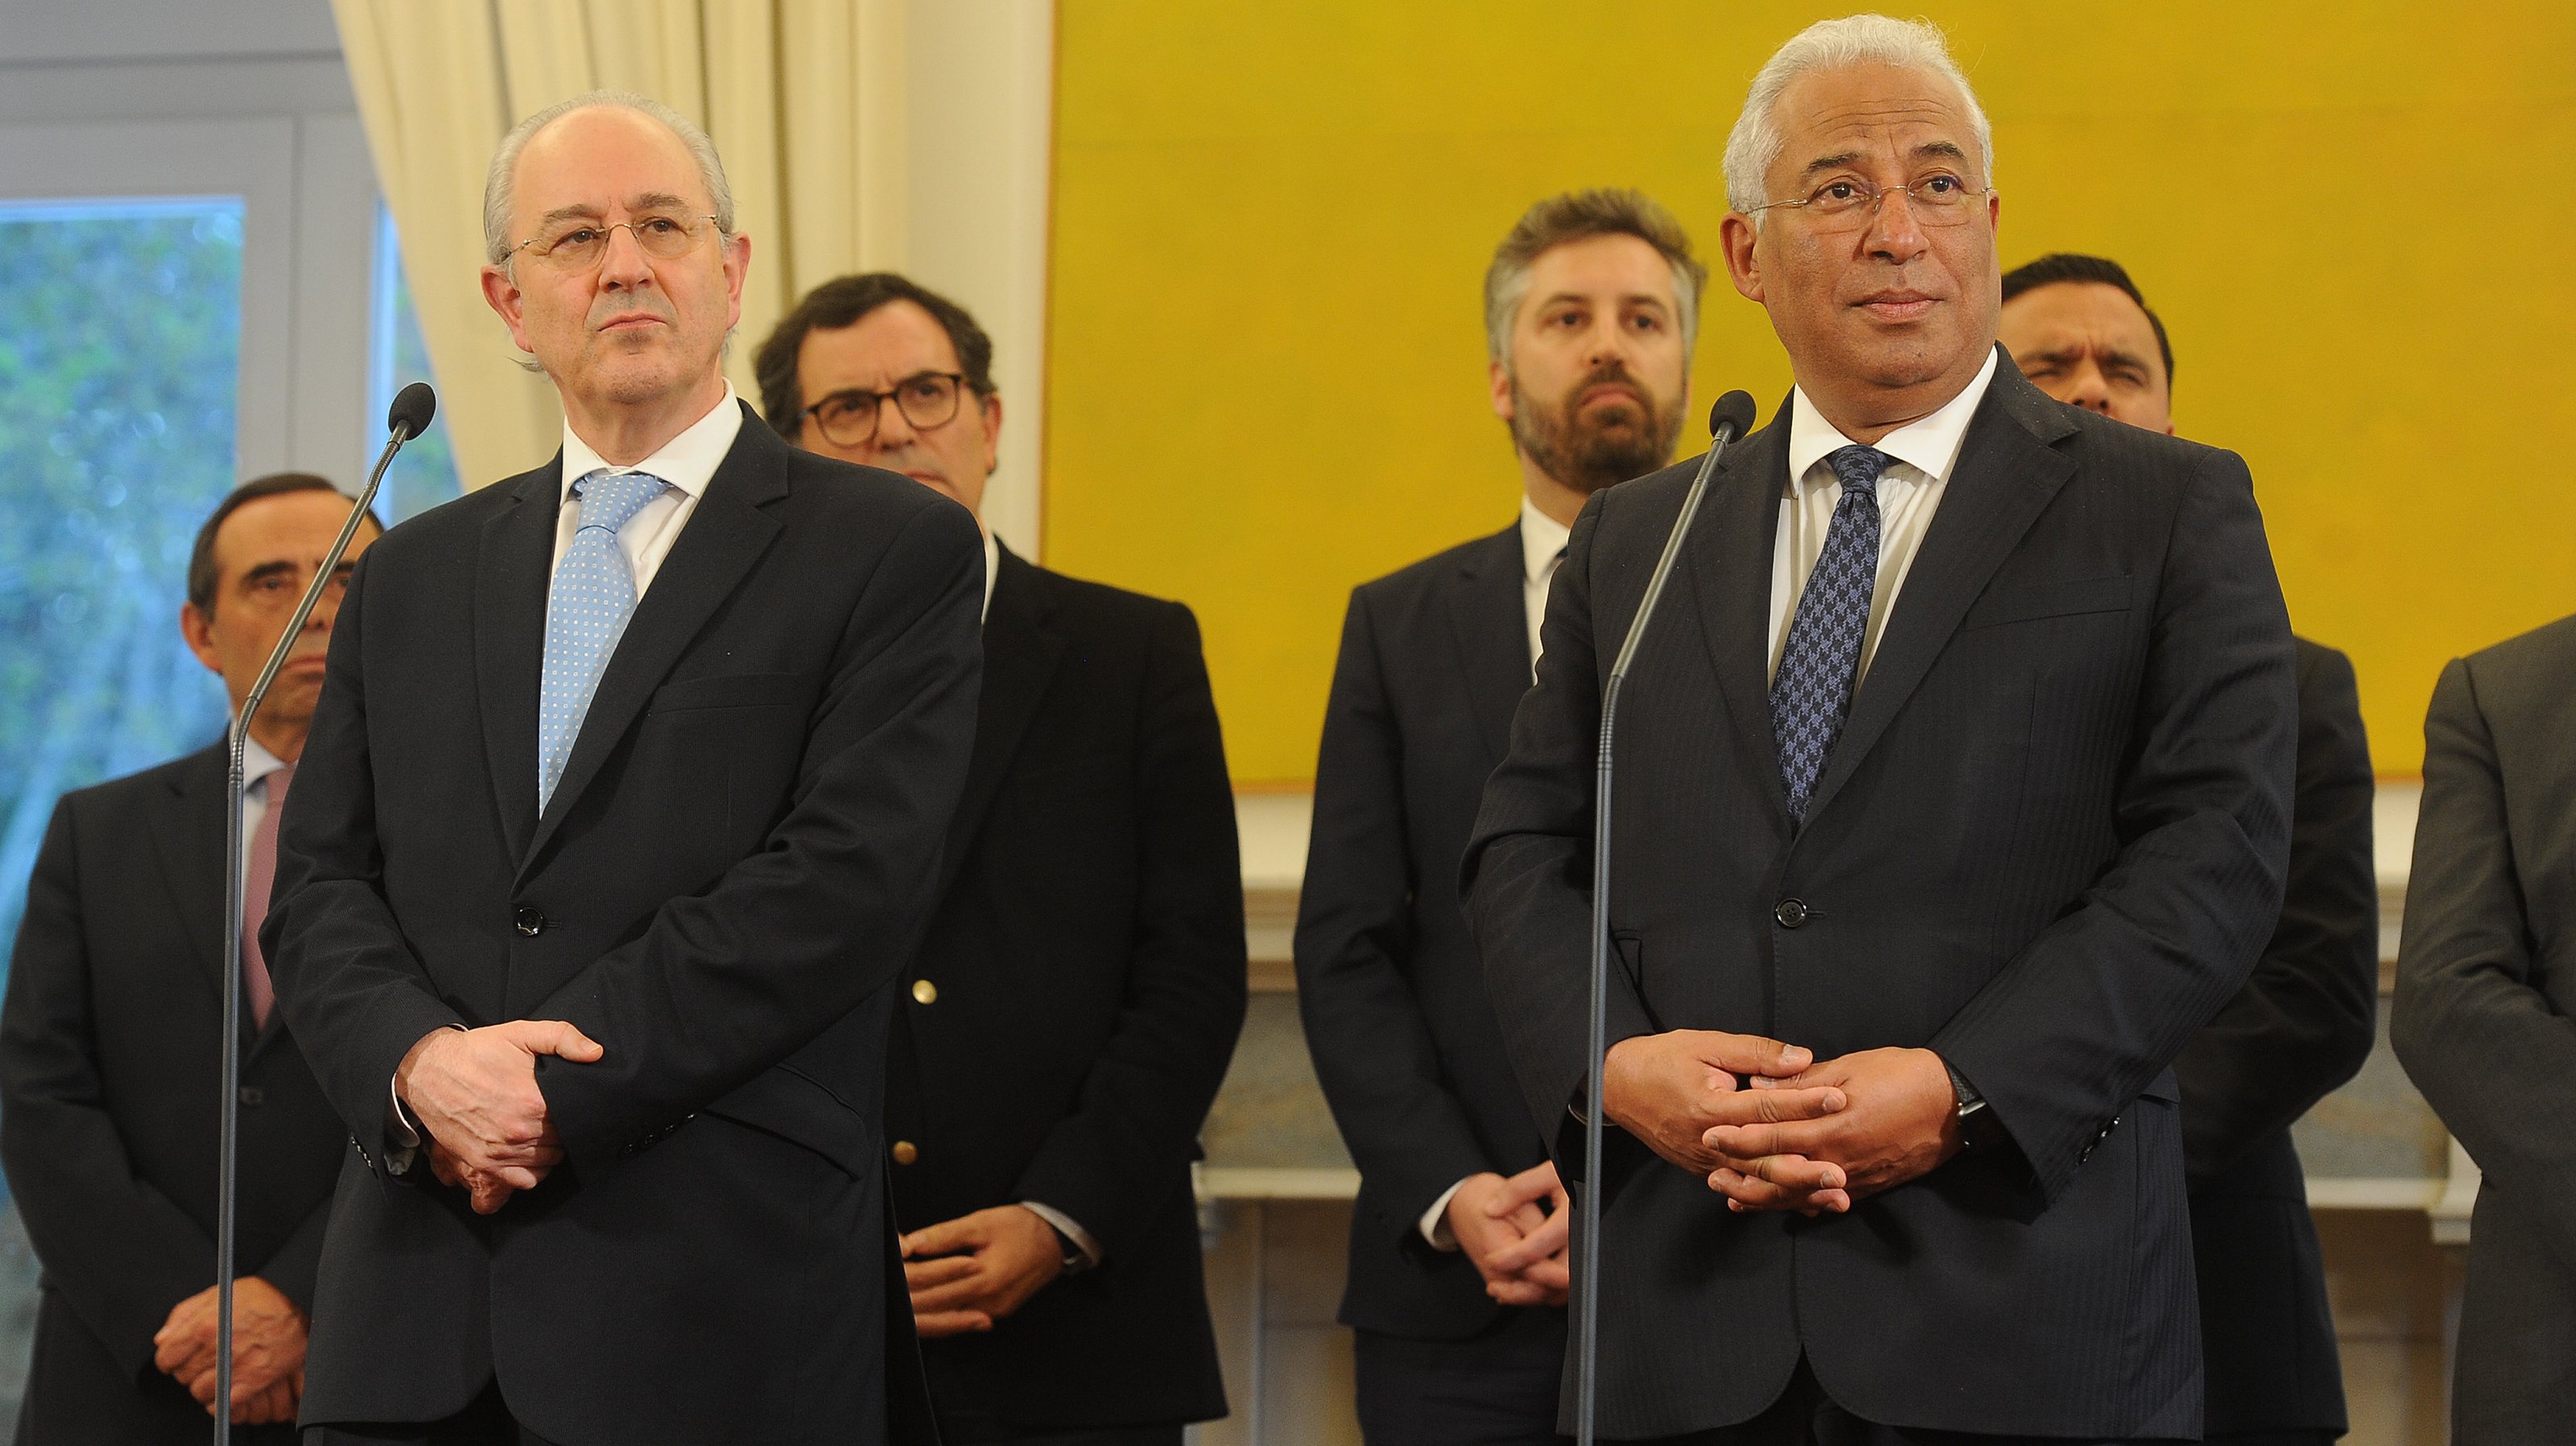 73% acredita que António Costa deverá manter-se como primeiro-ministro